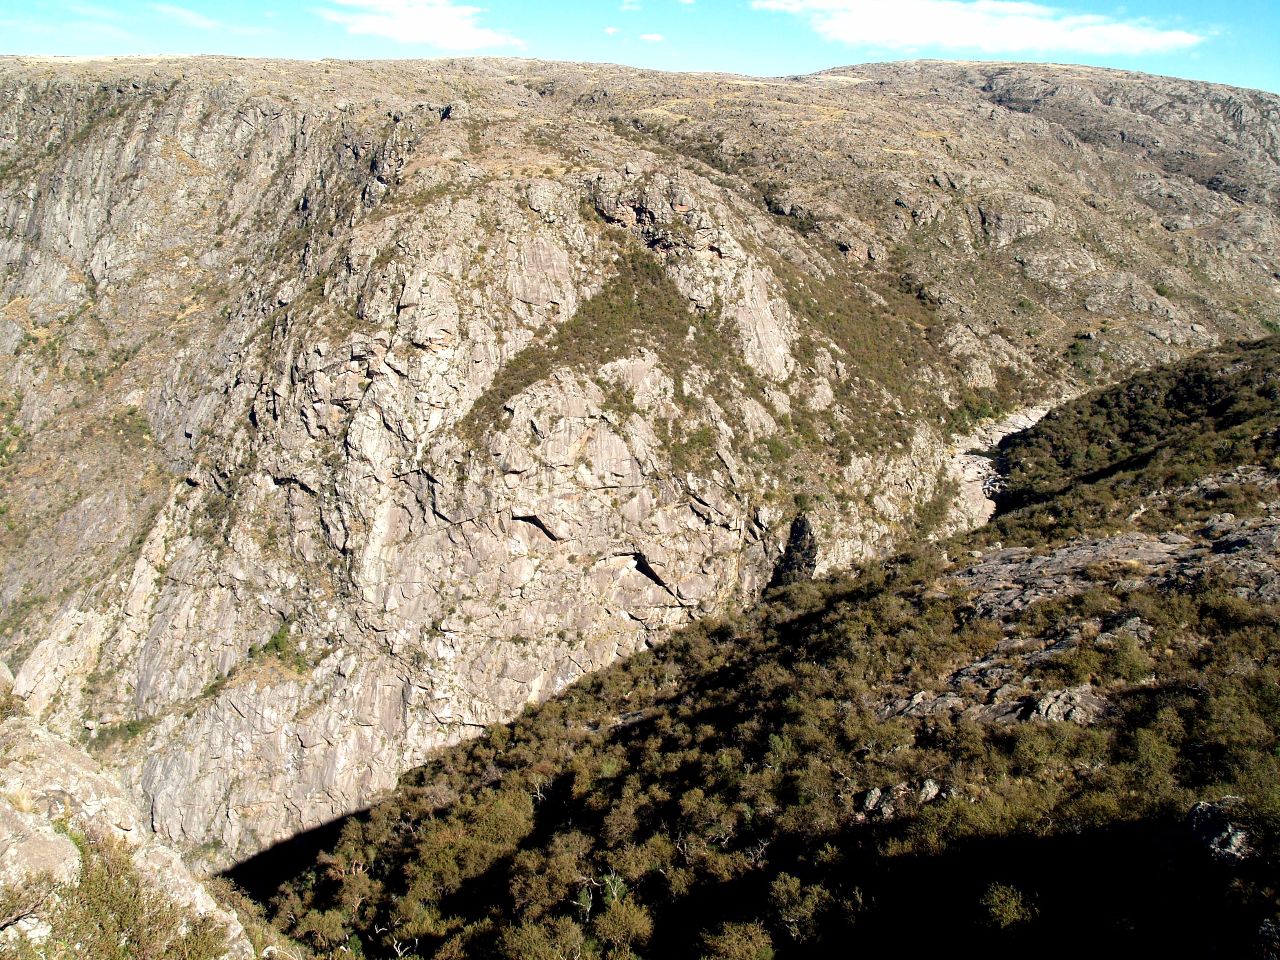 Начальная лётная школа кондоров и другие горные красоты Кебрада-дель-Кондорито Национальный Парк, Аргентина